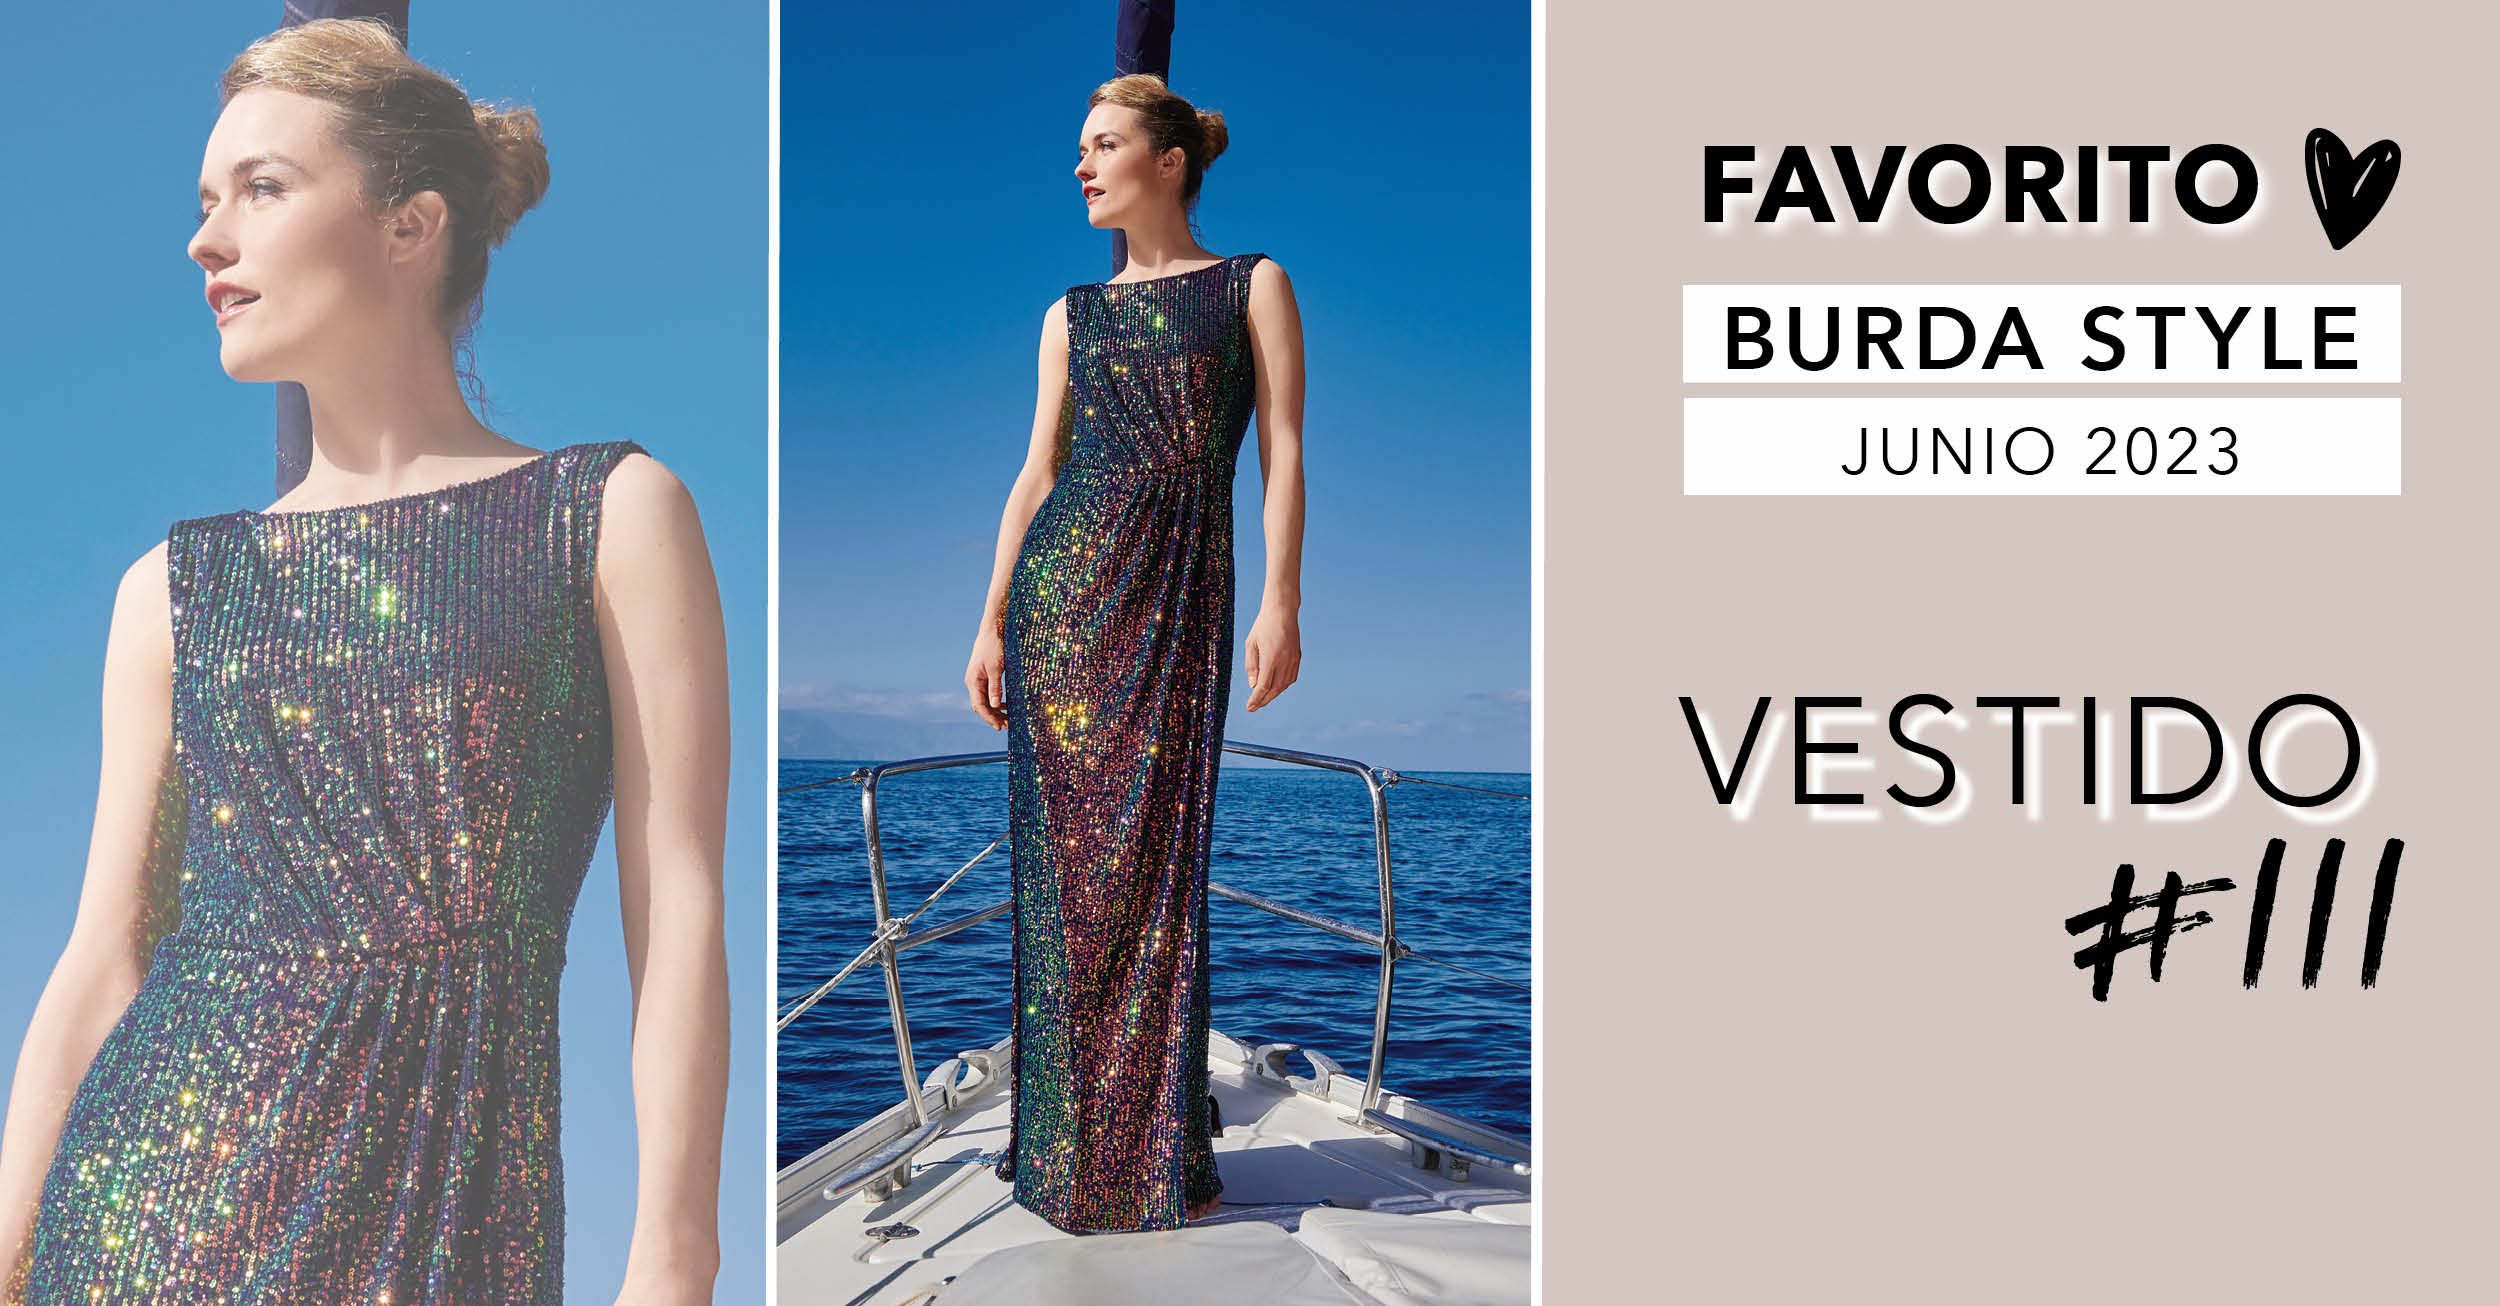 Favorito: un vestido de noche en la edición de junio de 2023 de Burda Style